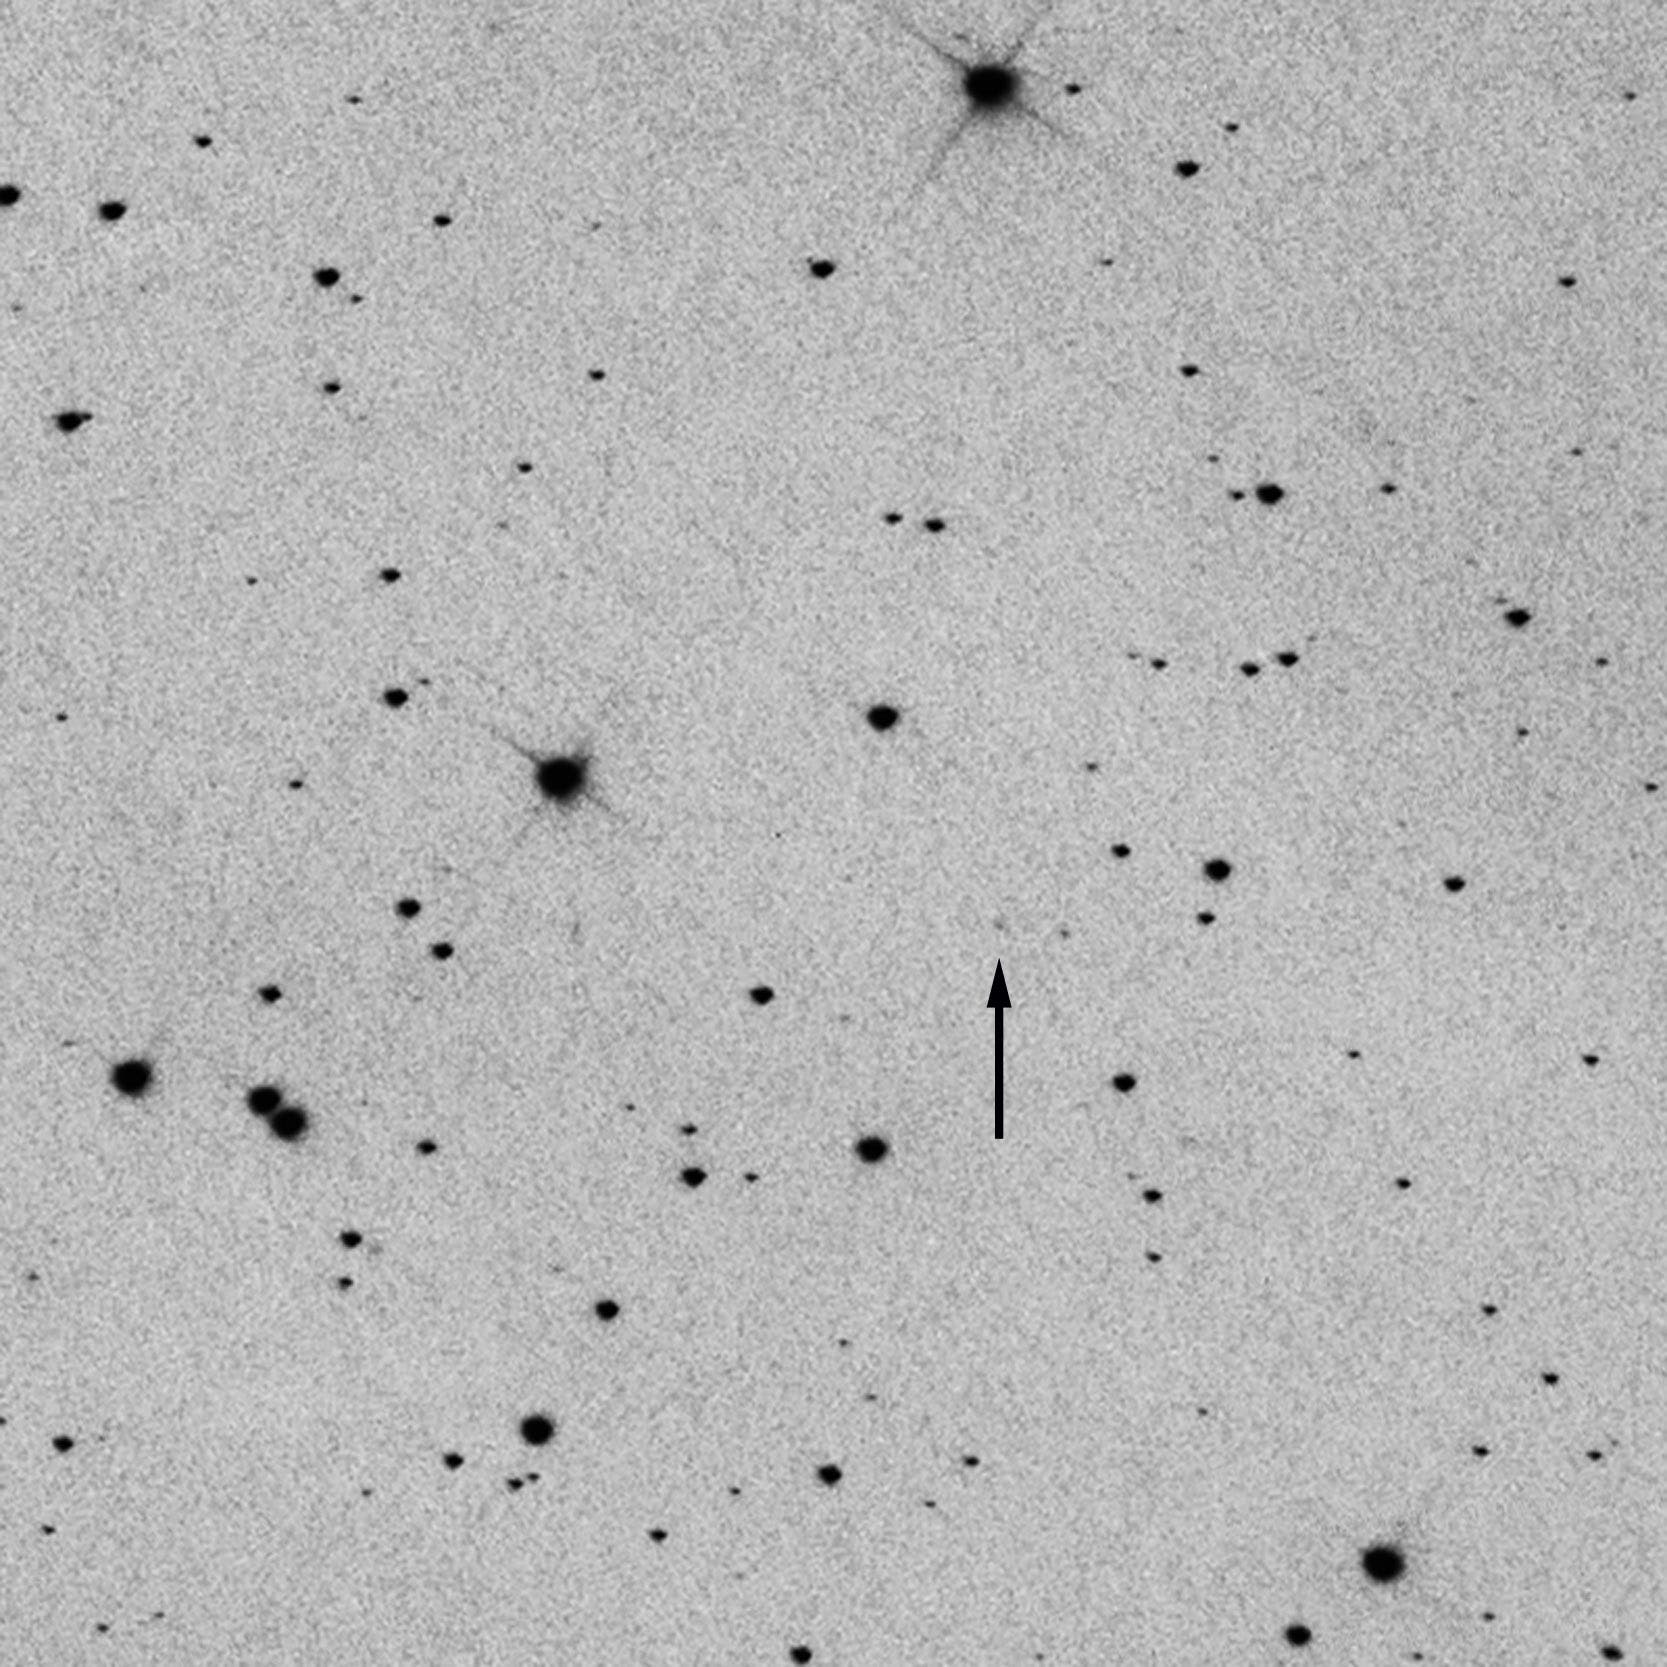 Komet C/21012 S1 (ISON)